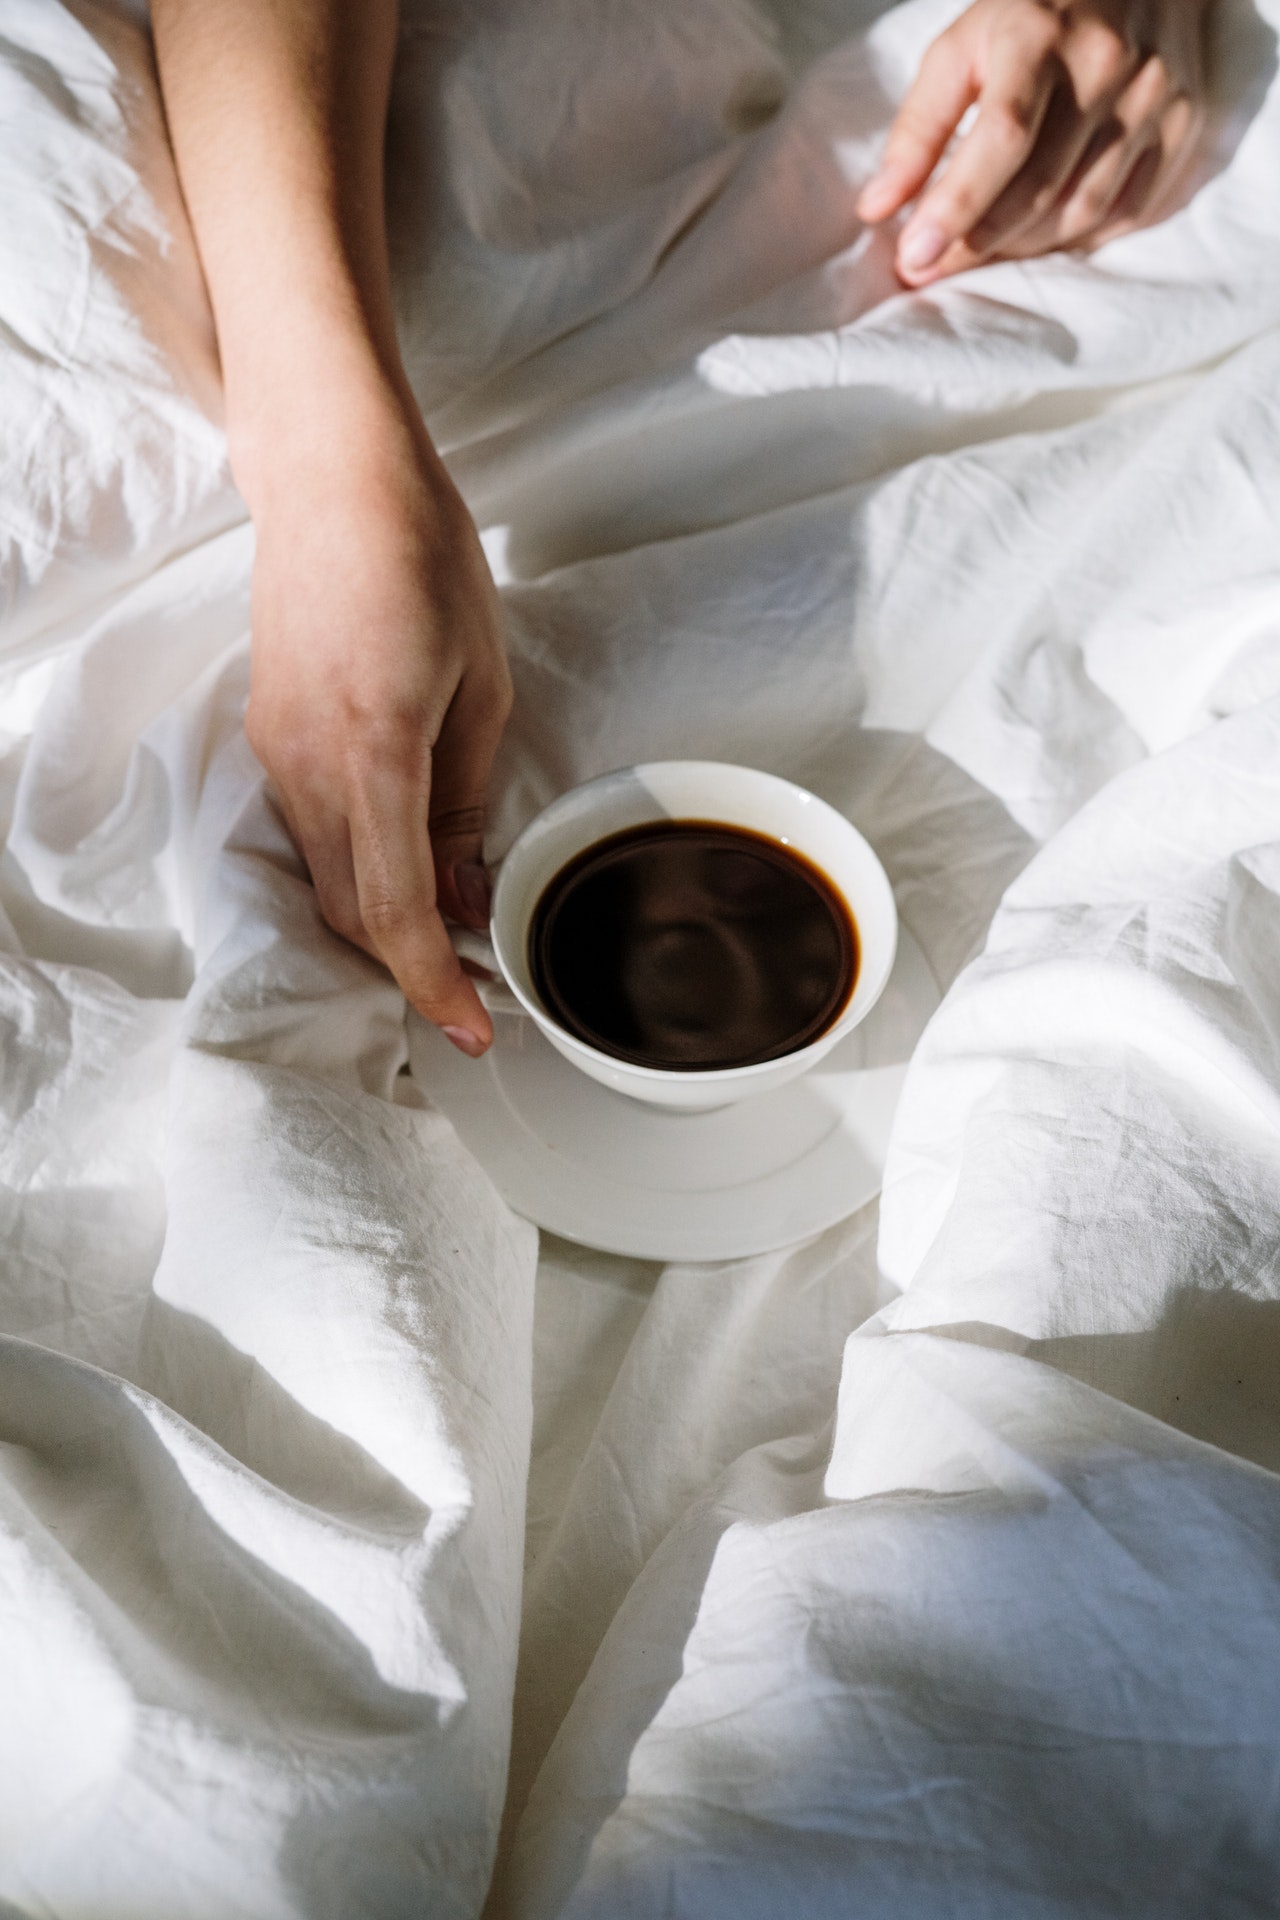 Bettwäsche wechseln Kaffeefleck